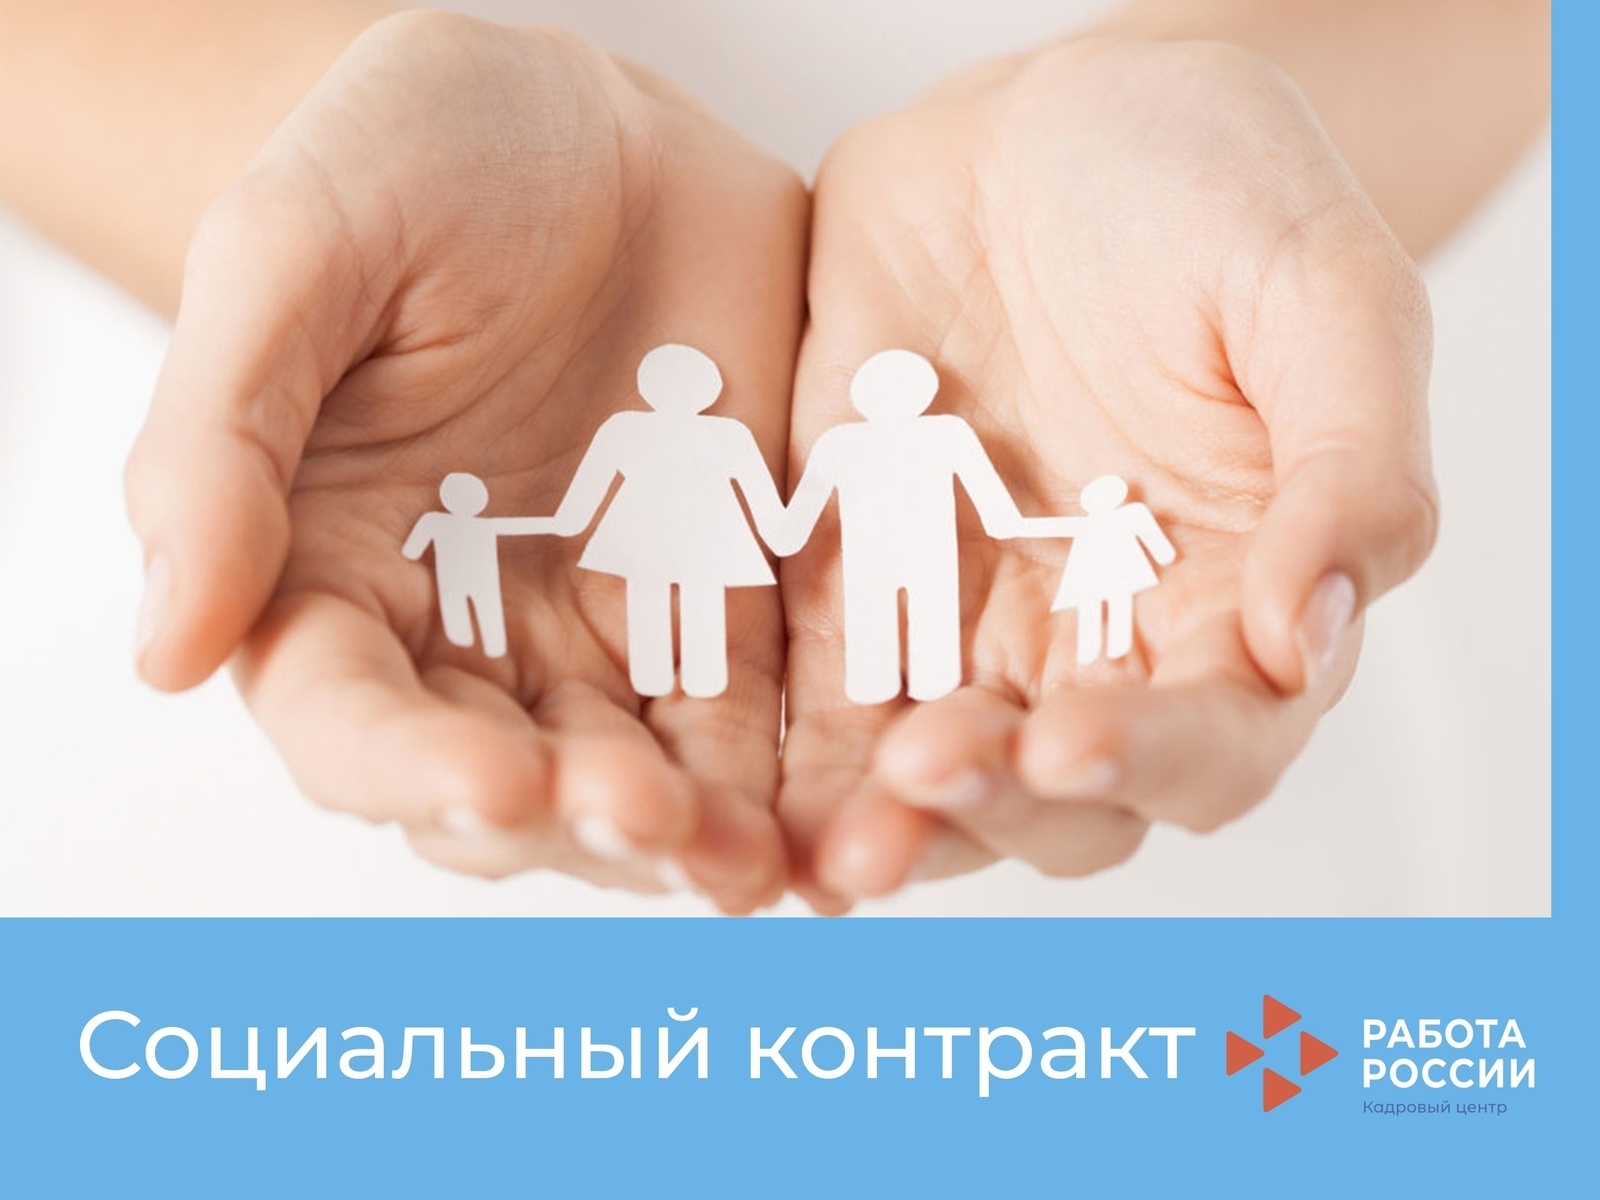 С начала действия программы АСПК собственное дело открыли 2,7 тыс. жителей Башкортостана